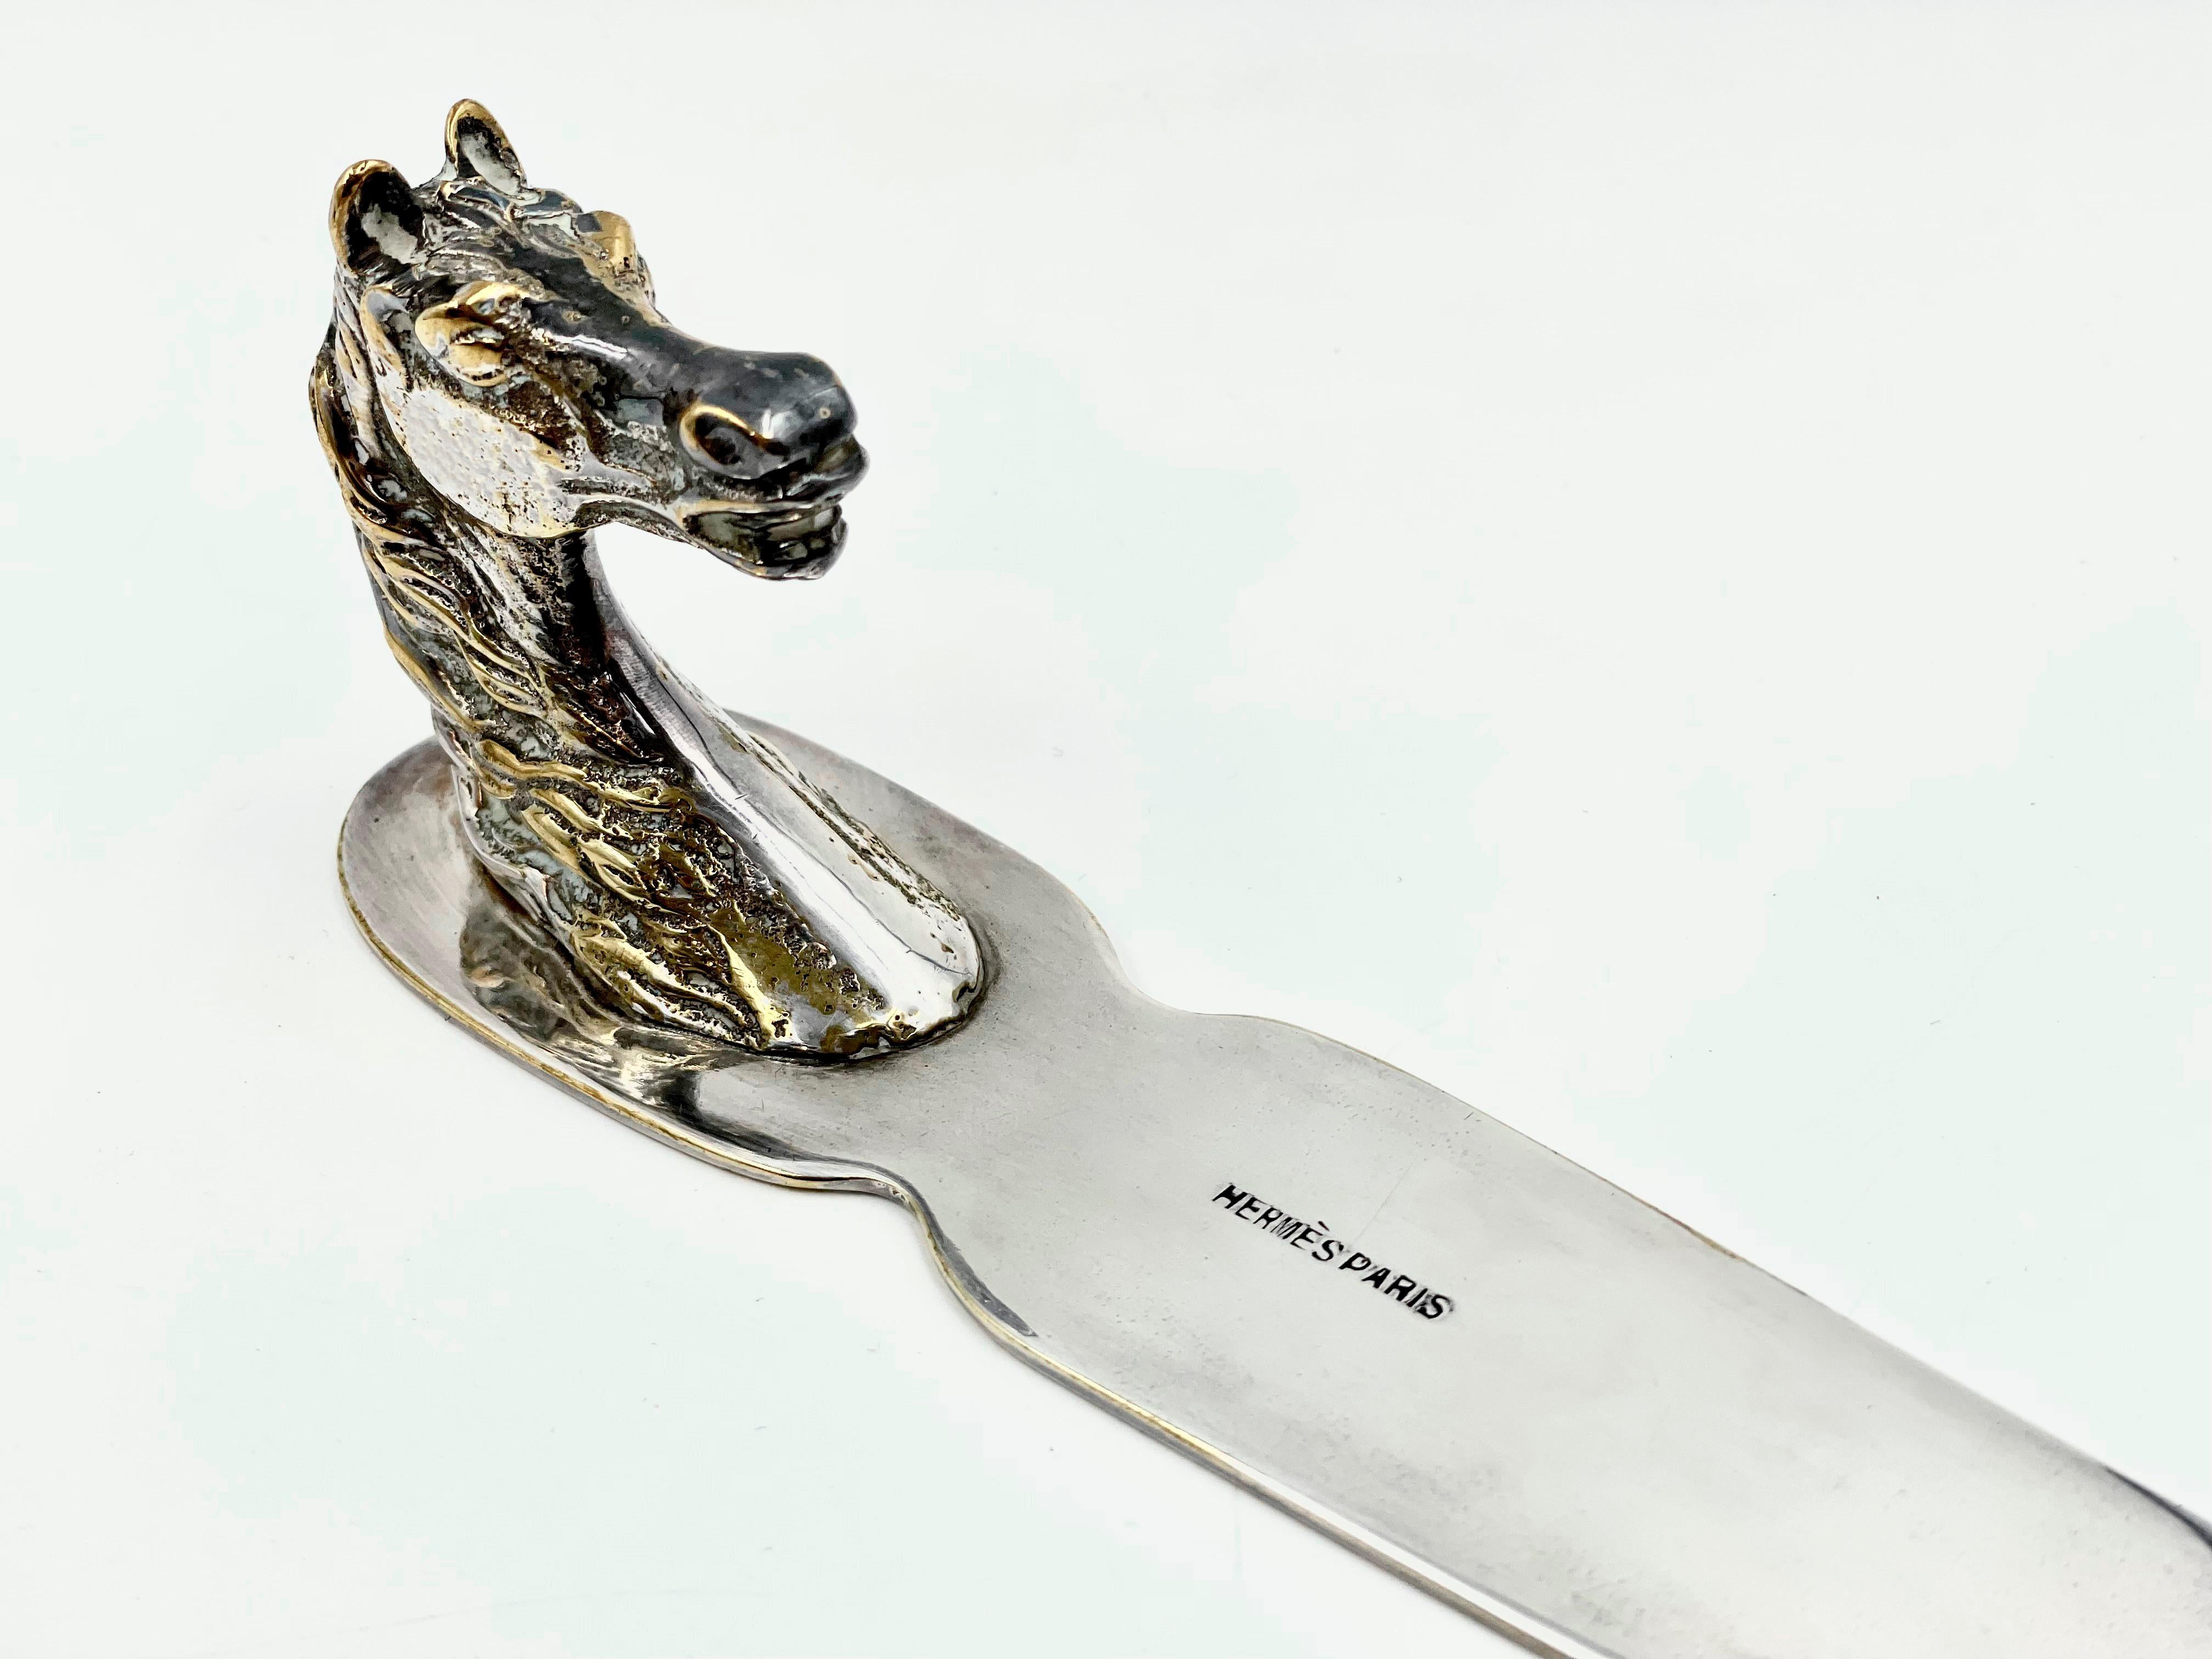 Eleganter Brieföffner von Hermès mit detailliertem Pferdekopf-Griff aus massivem Metall, schöner leichter Patina auf dem Silber und einer Klinge, die sich zur Spitze hin sanft verjüngt. Dieses Stück ist eine beeindruckende und praktische Ergänzung,